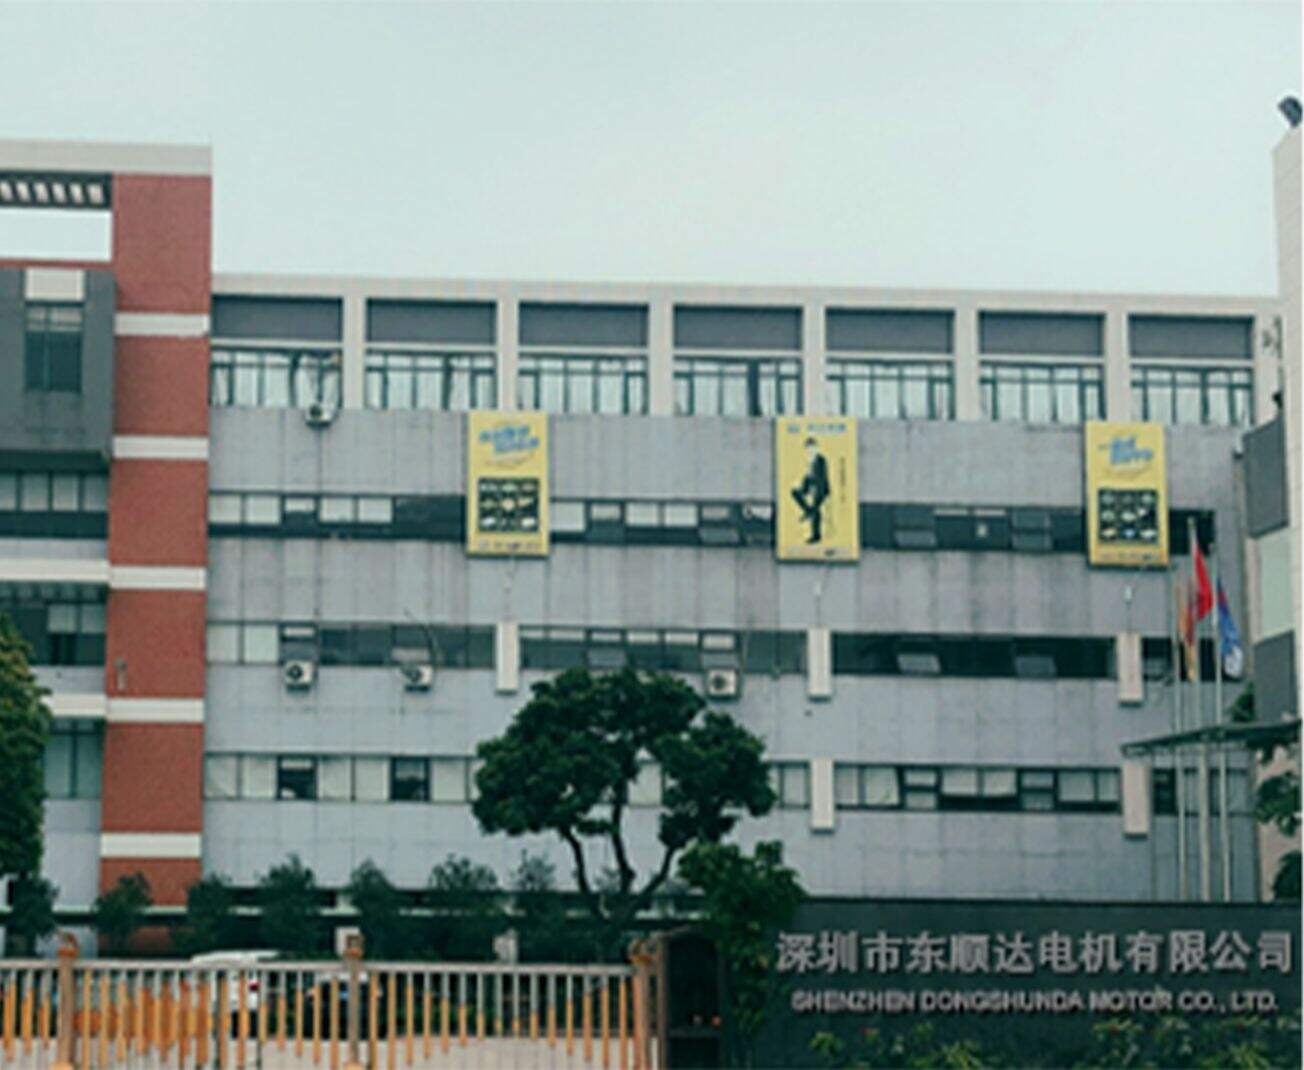 Spoločnosť Shenzhen Dongshunda Motor Co.